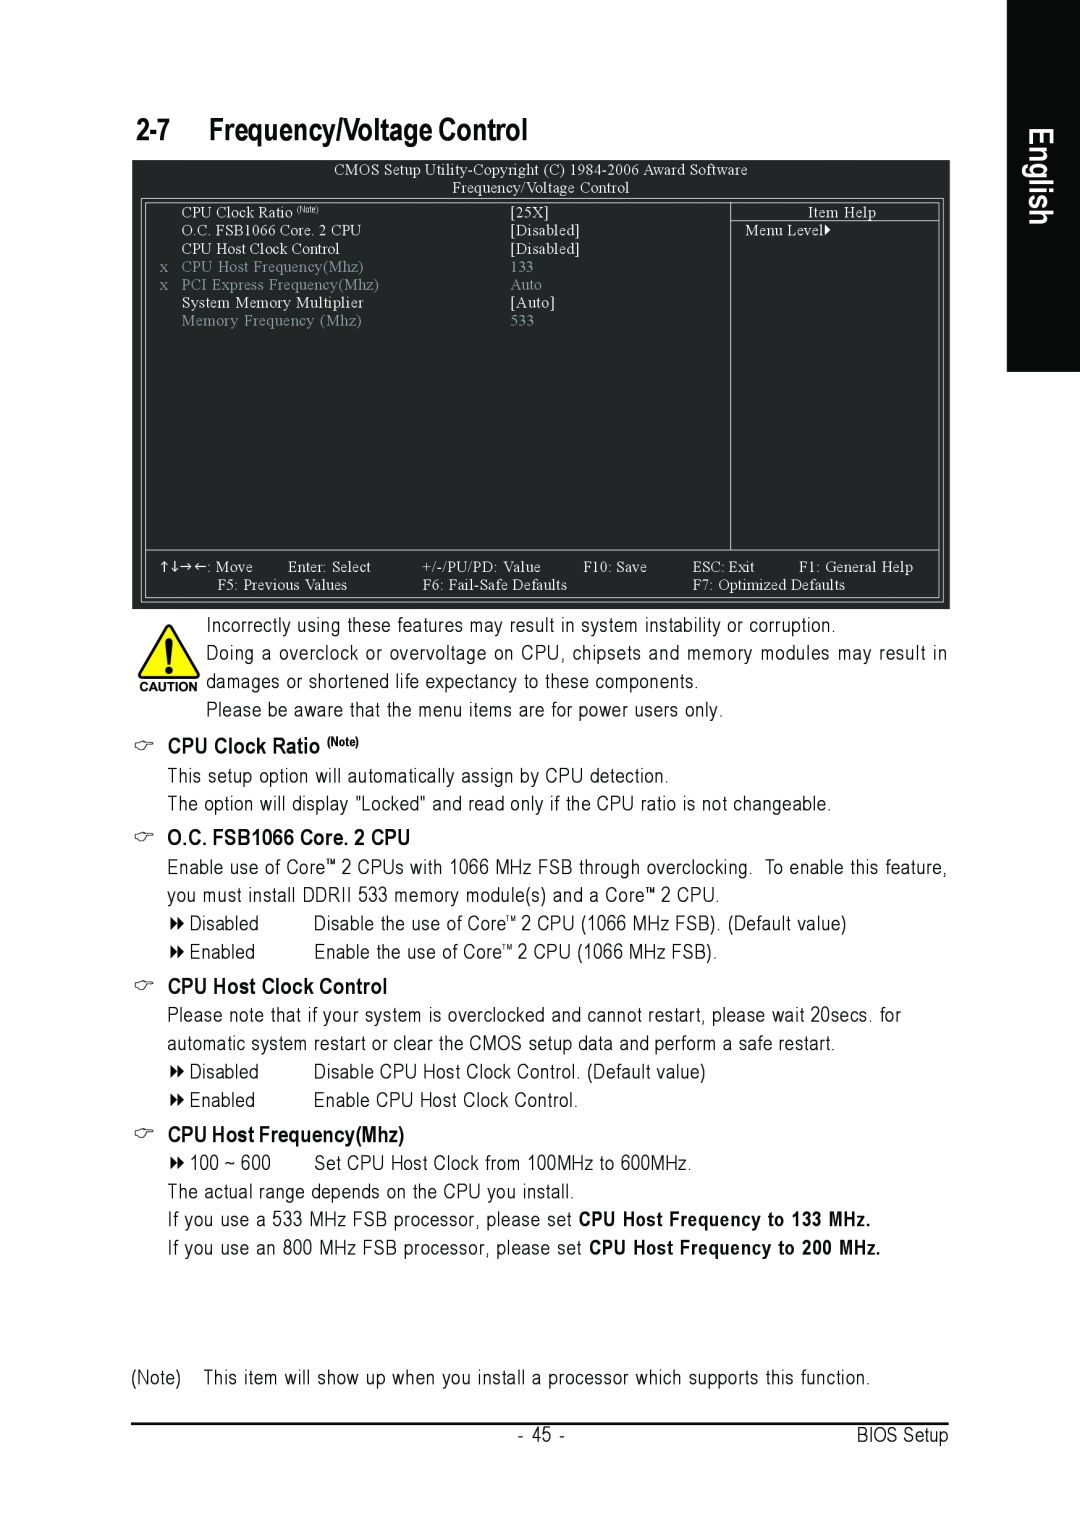 Gigabyte GA-945PLM-(D)S2 Frequency/Voltage Control, CPU Clock Ratio Note, O.C. FSB1066 Core. 2 CPU, CPU Host Clock Control 